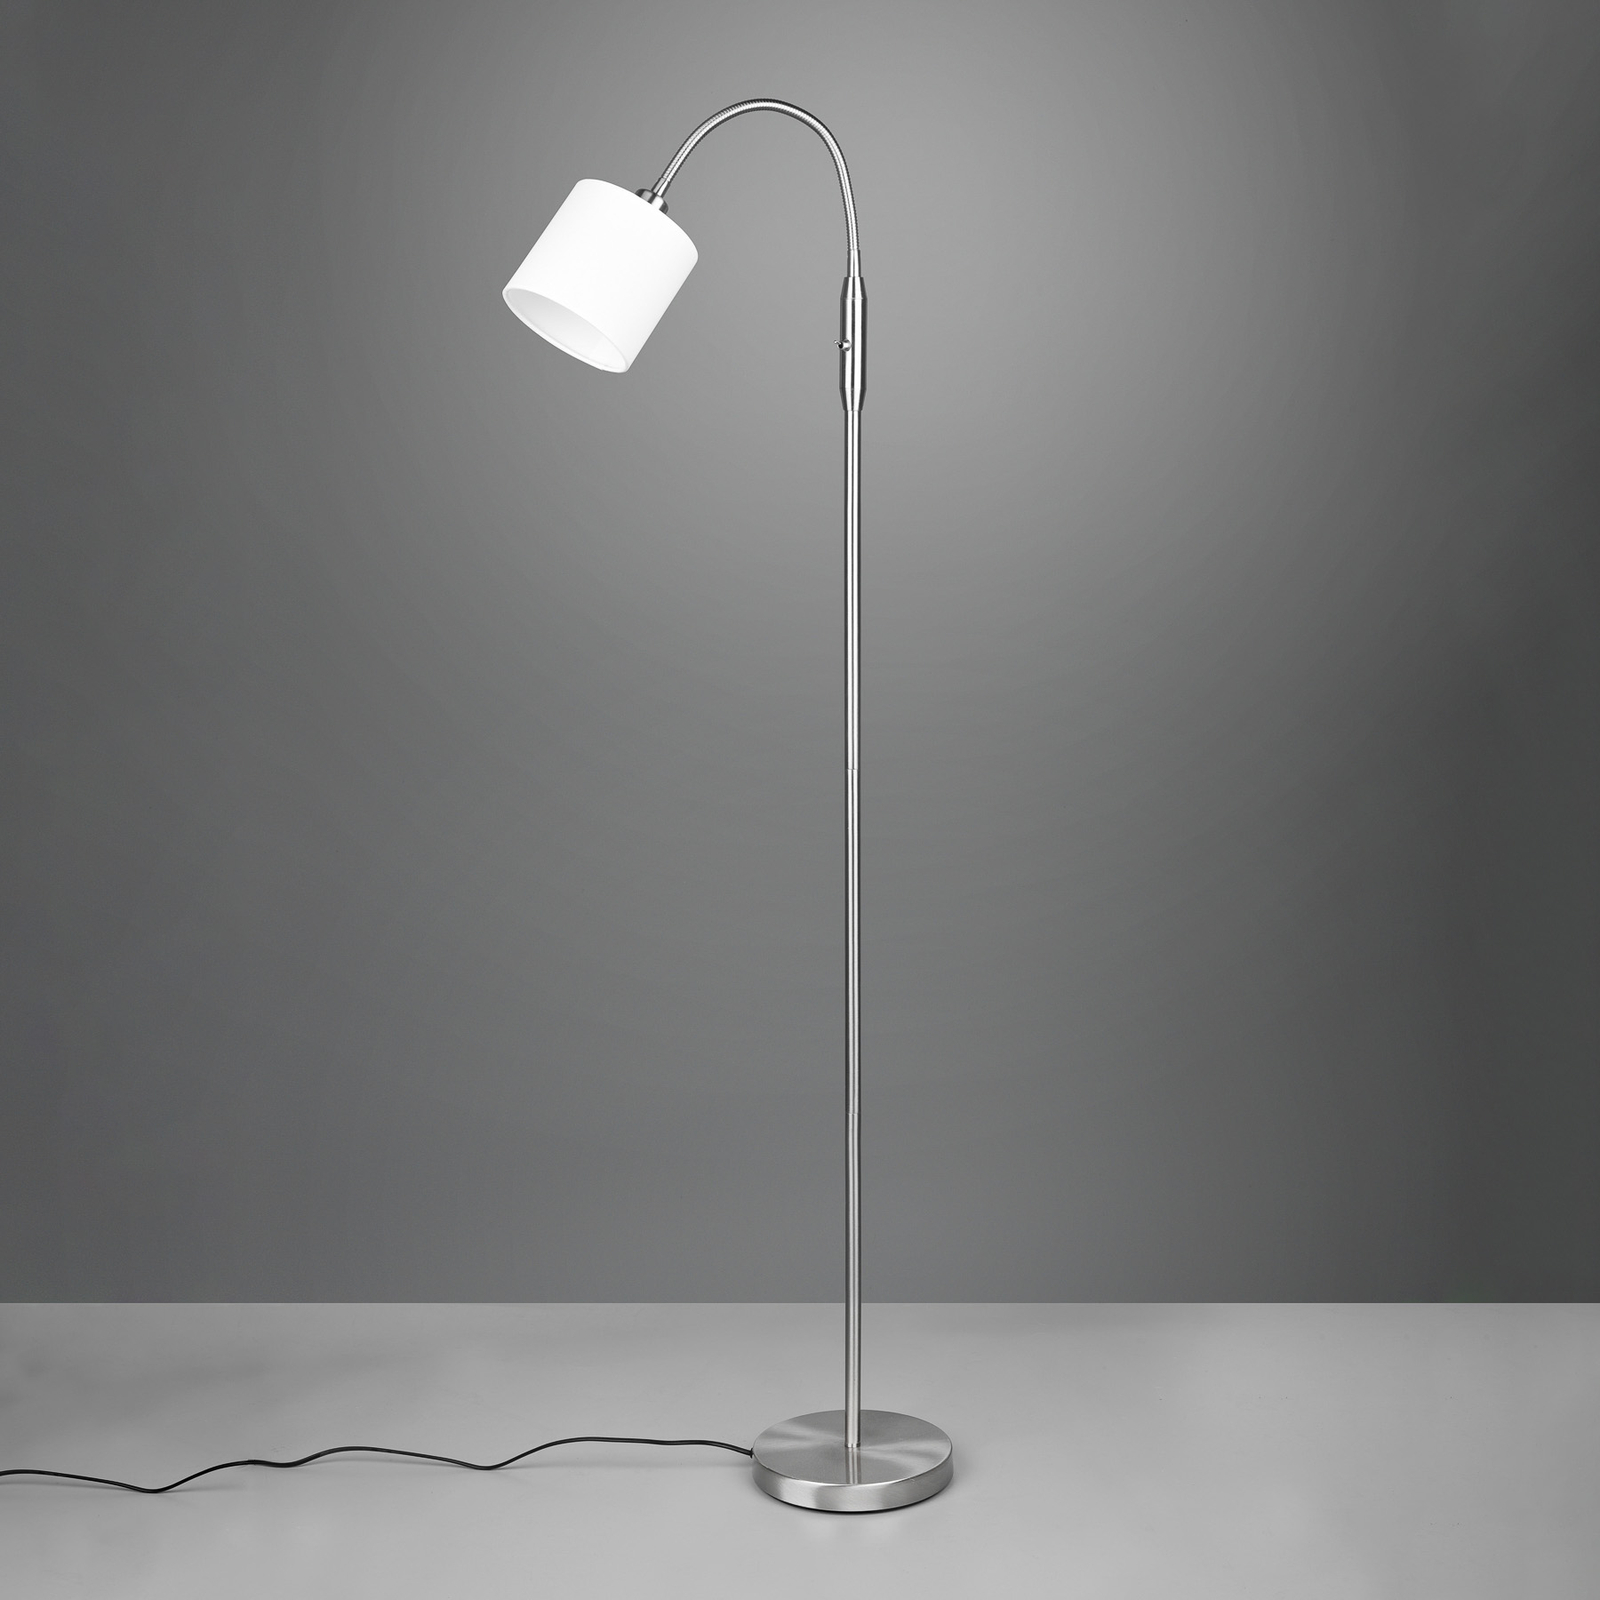 Stehlampe Tommy, nickel/weiß, Höhe 130 cm, Metall/Stoff